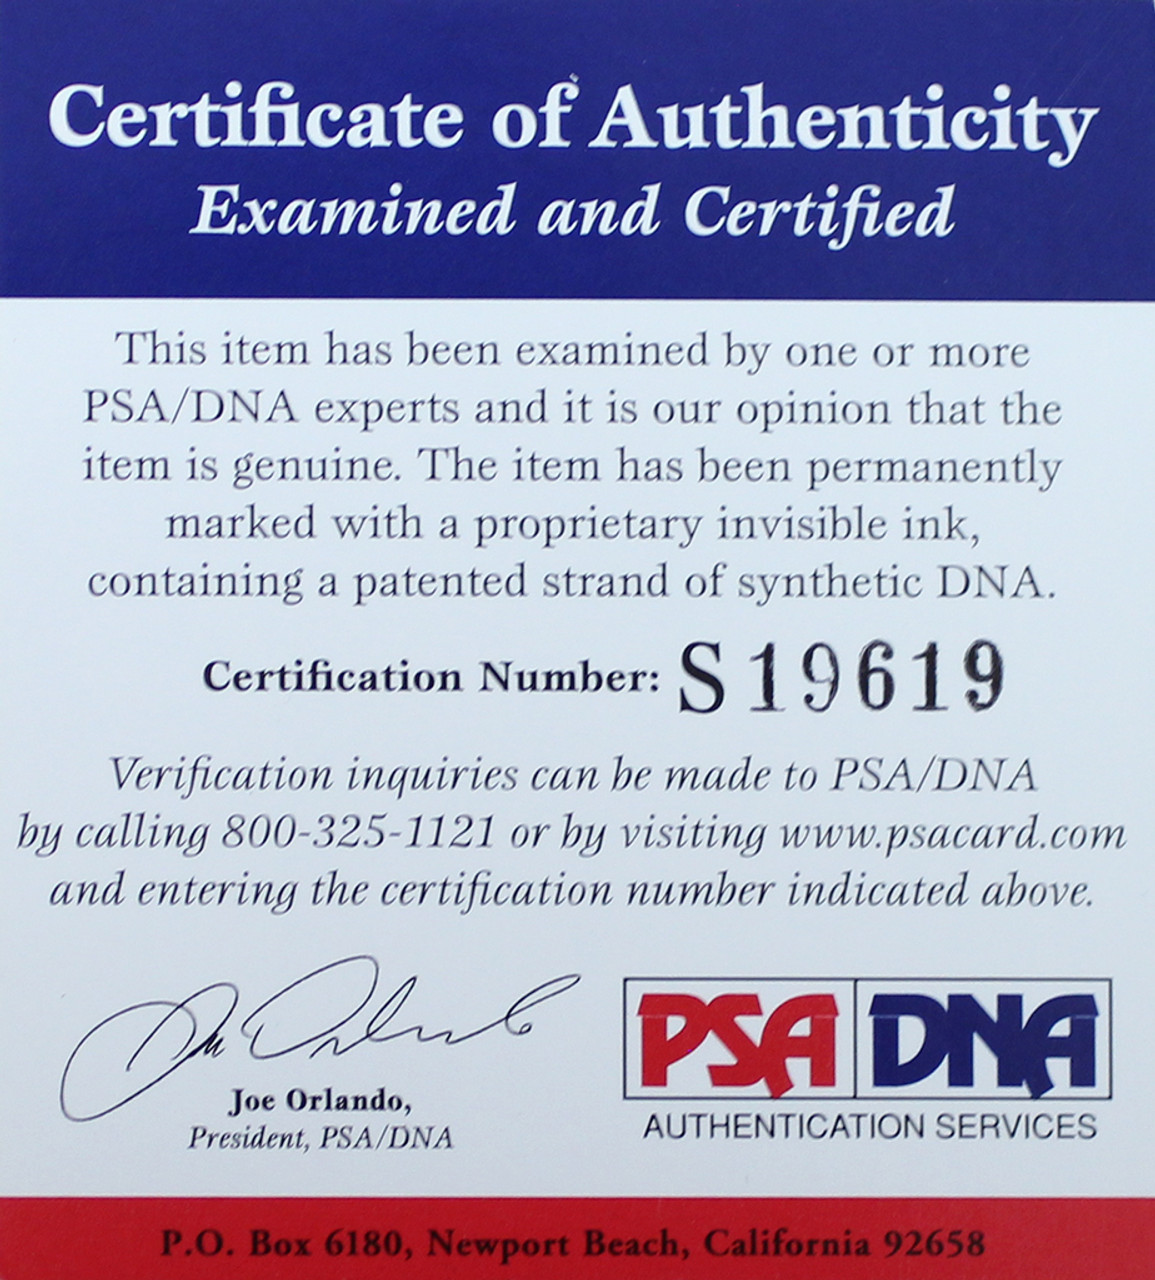 Tommy LaSorda Framed Jersey PSA/DNA Autographed Signed Los Angeles Dod